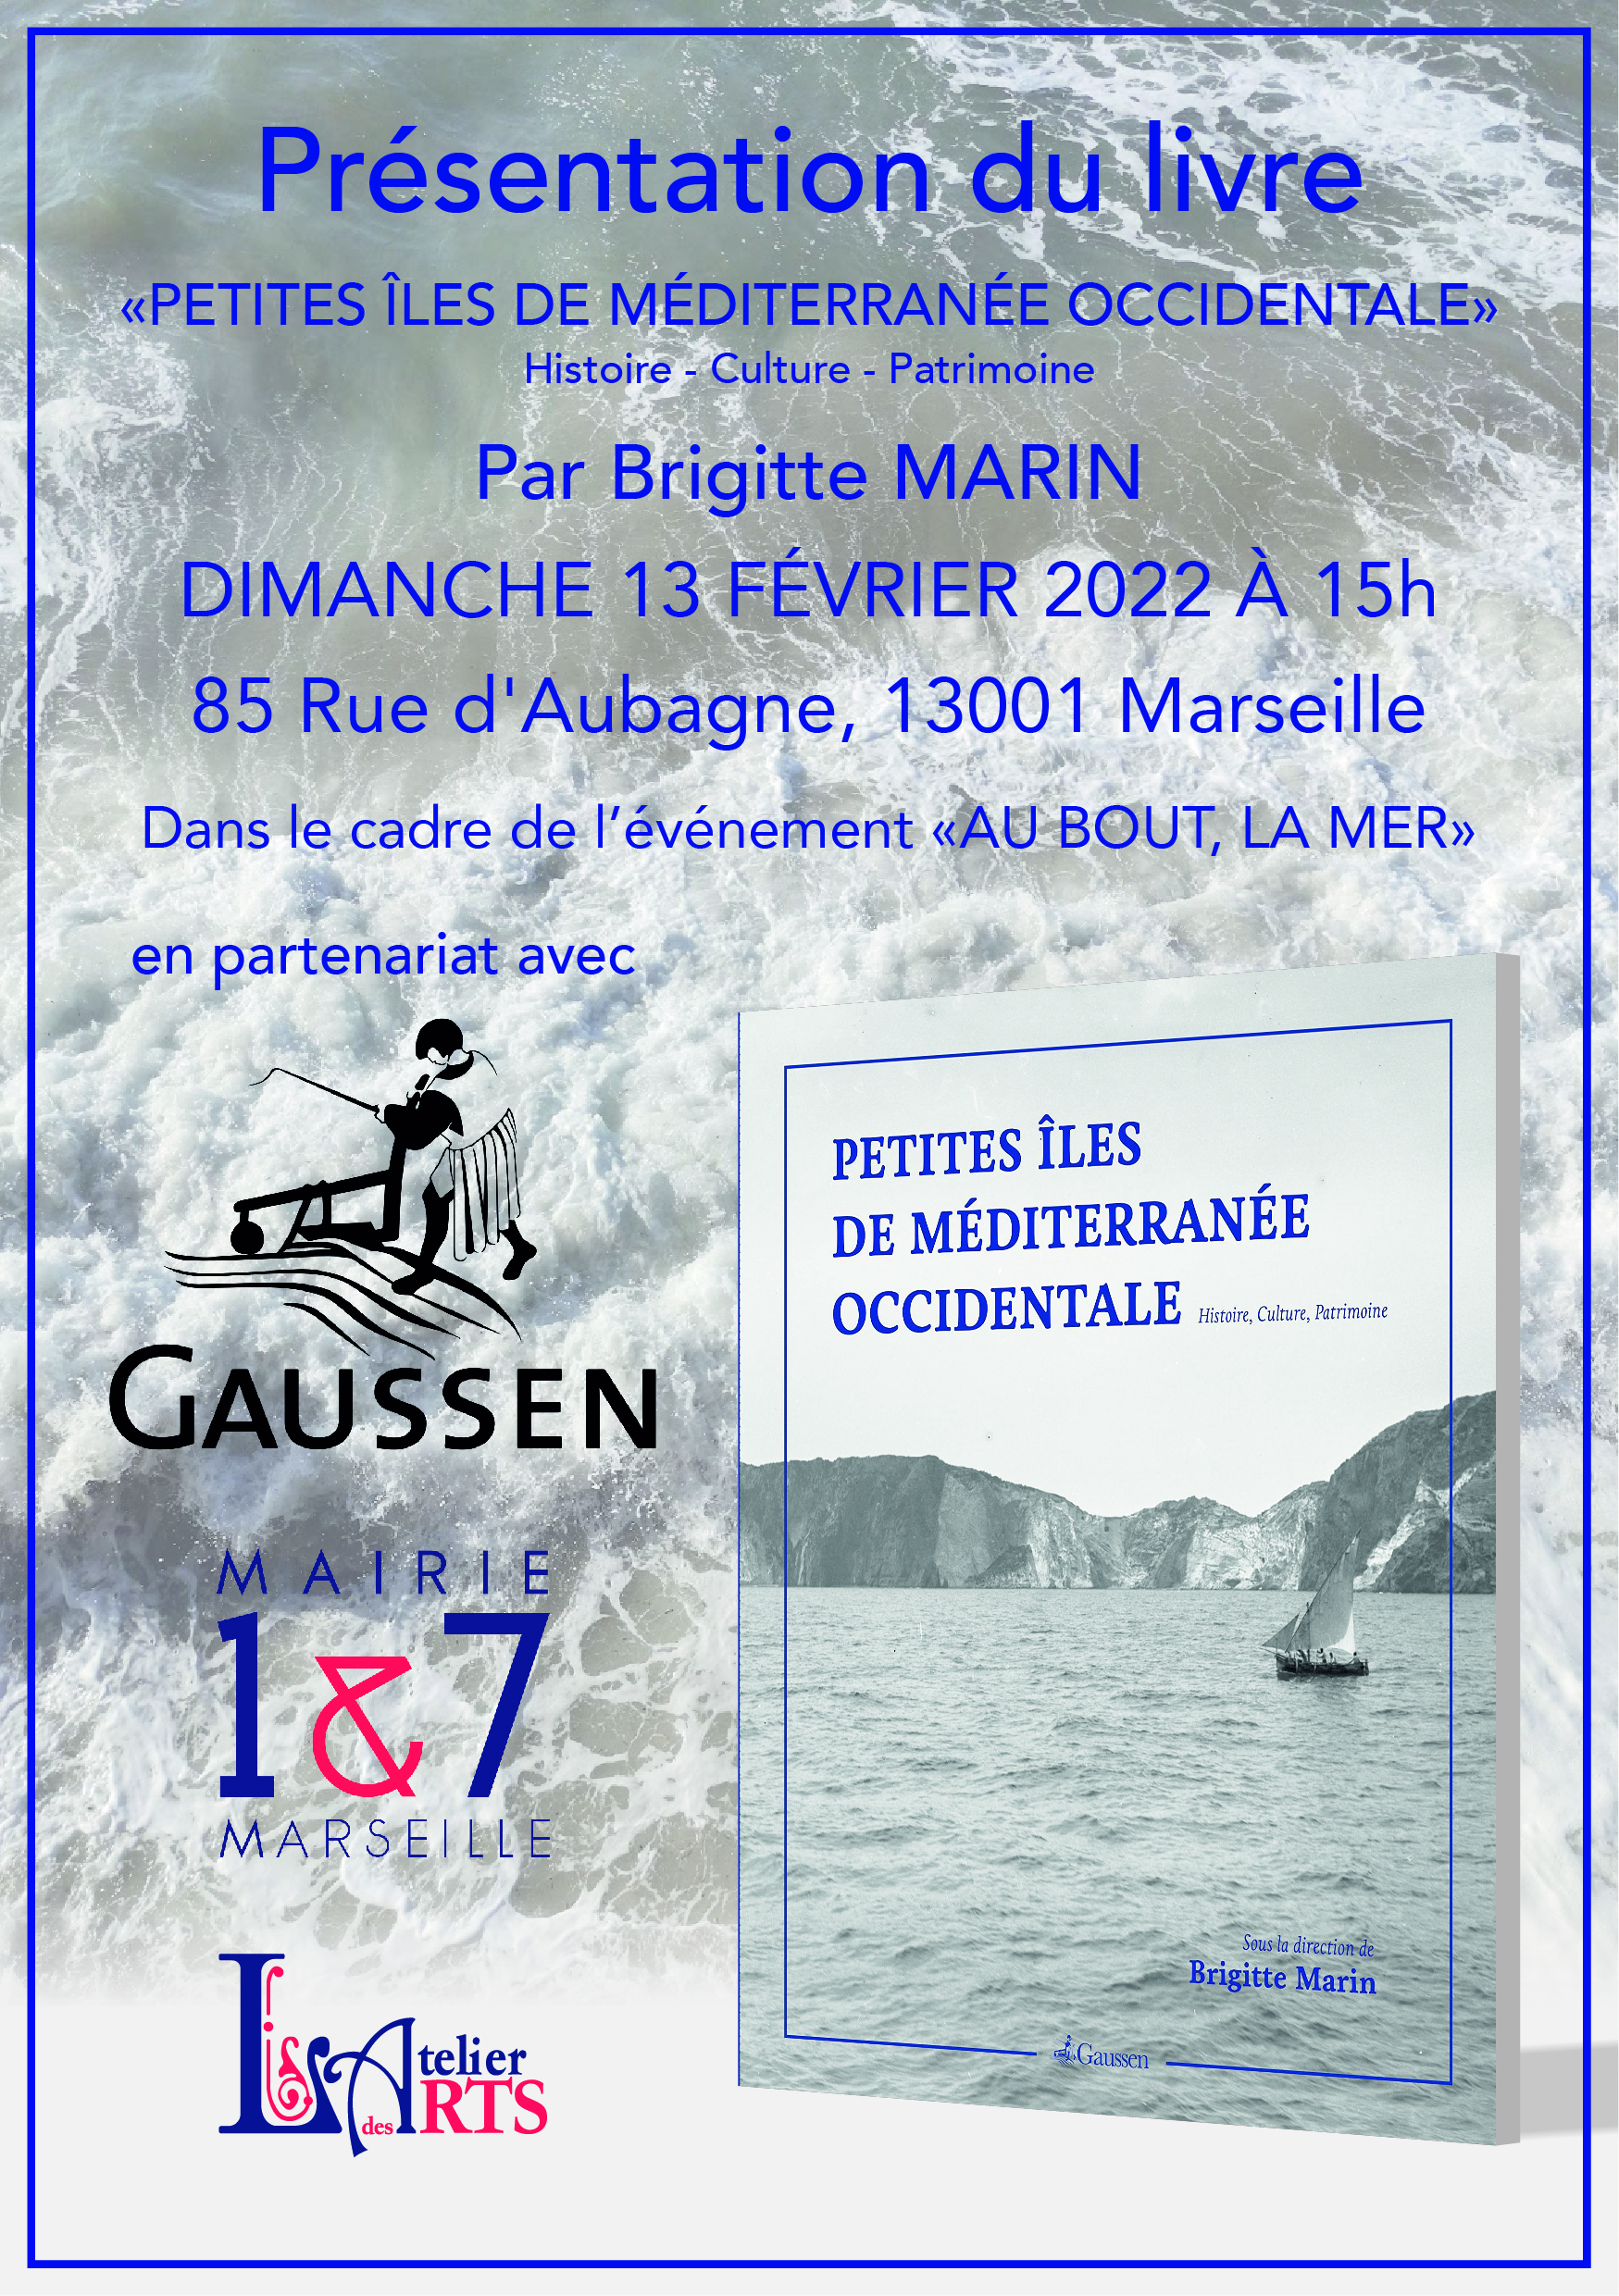 (1) rencontre avec Brigitte Marin  autour du livre « Petites Iles de Méditerranée Occidentale »  – 85, rue d’Aubagne -13001 Marseille